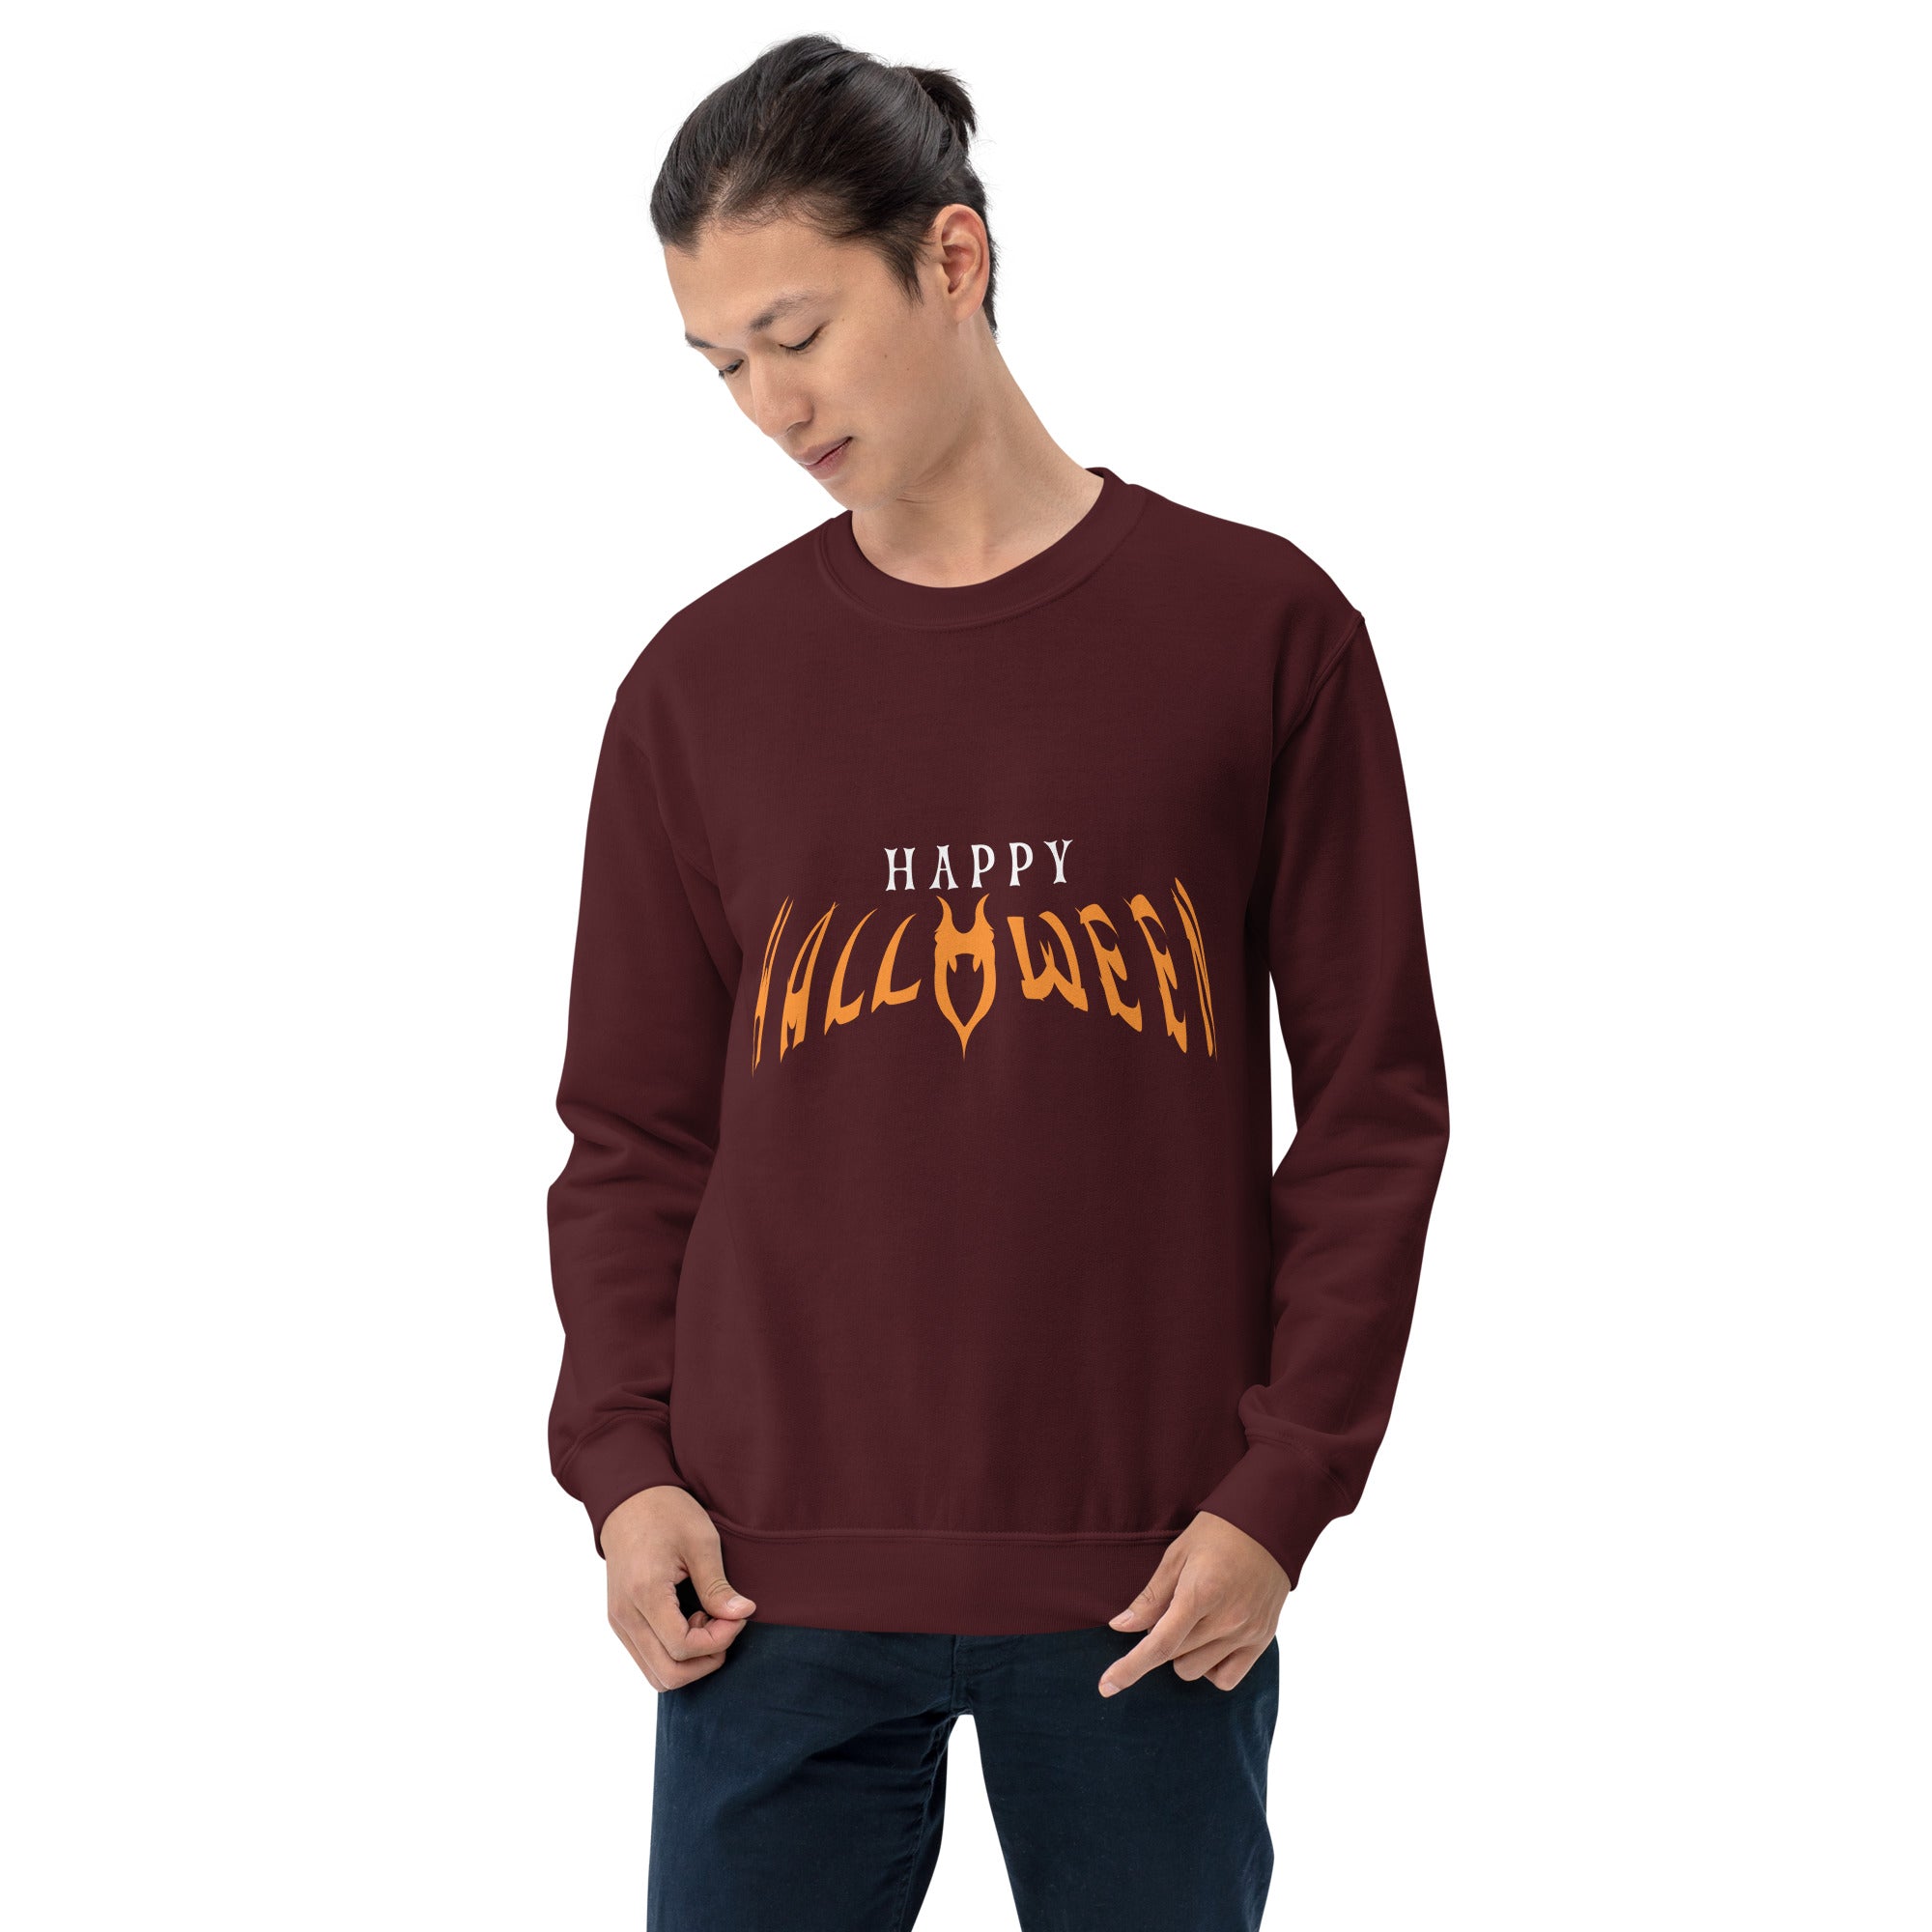 Happy Halloween Men's Sweatshirt